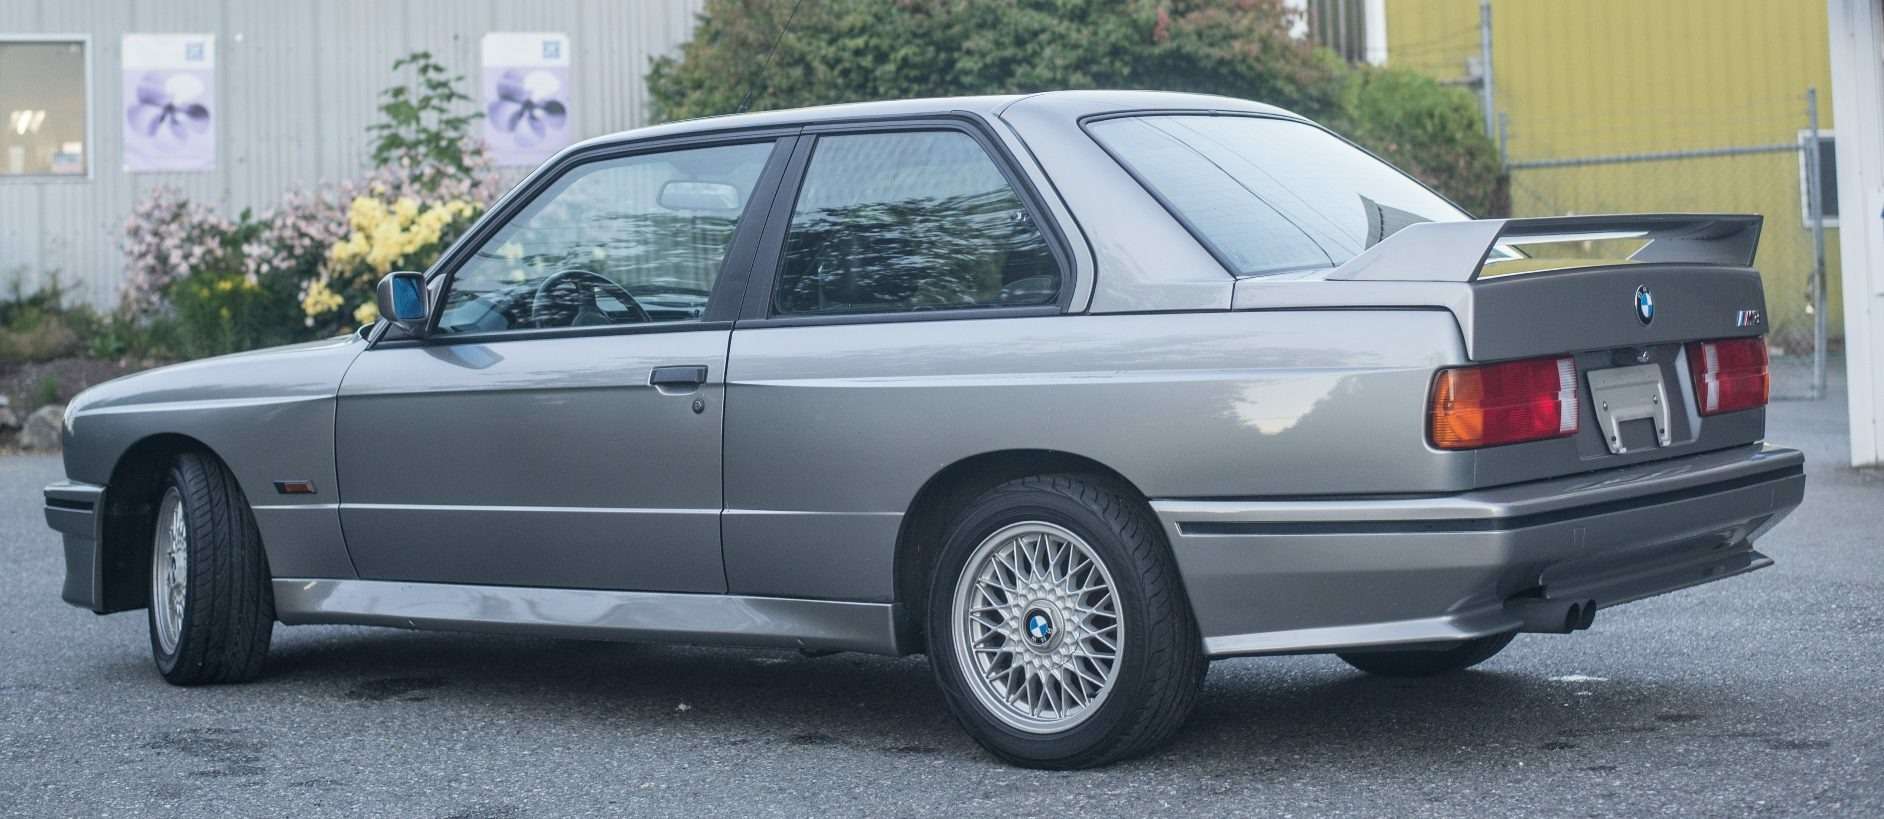 Эксперты оценили раритетный BMW M3 в миллион долларов! — фото 617495